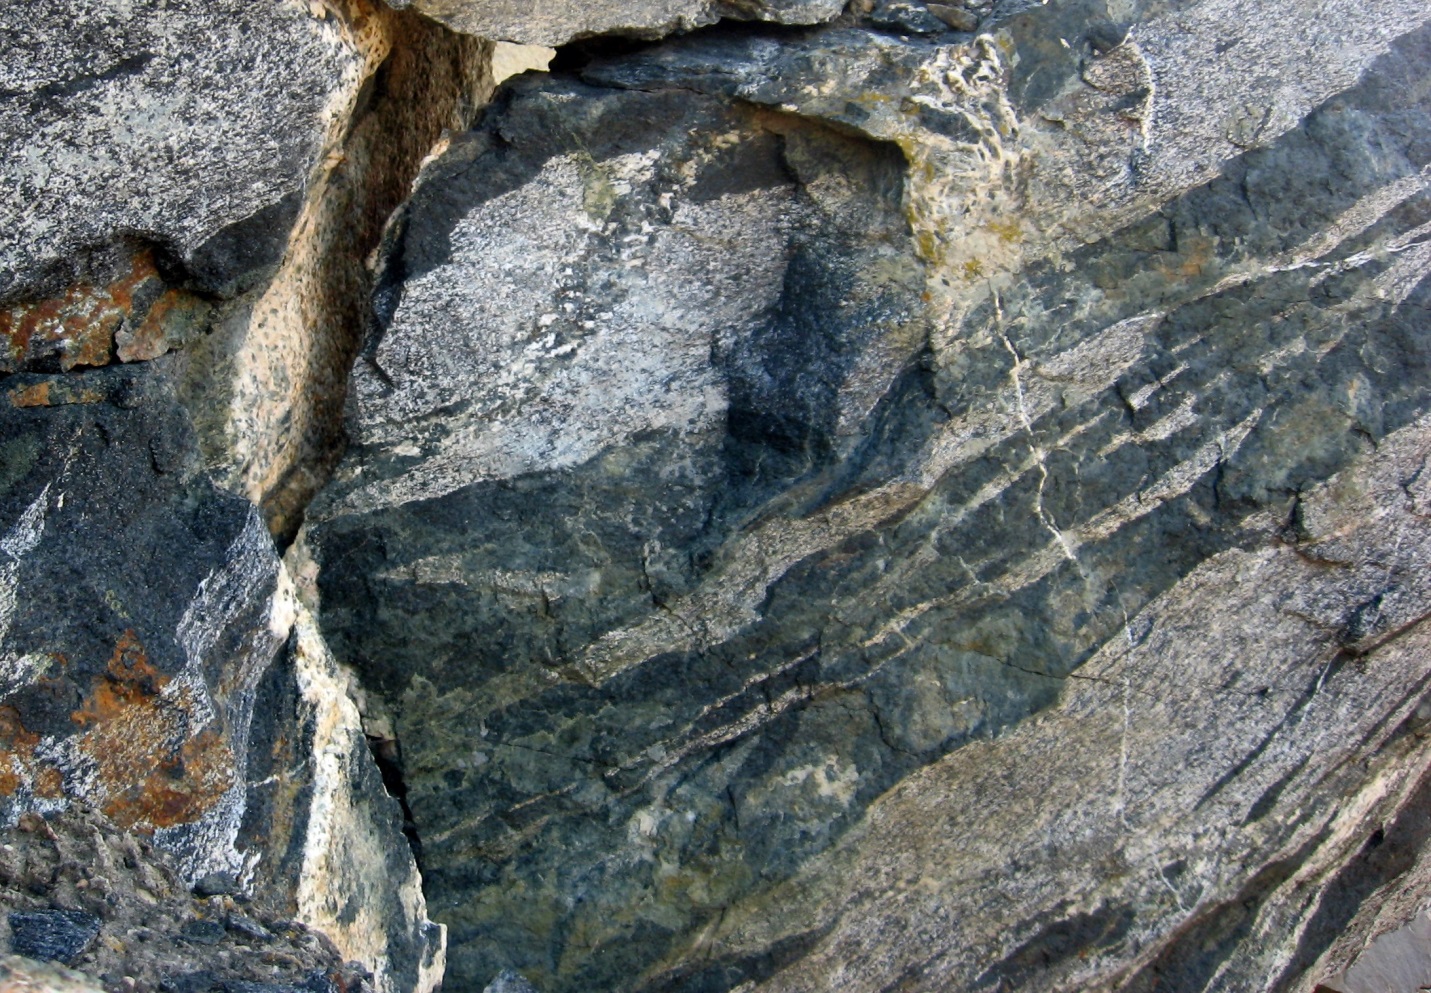 metamorphic rock gneiss